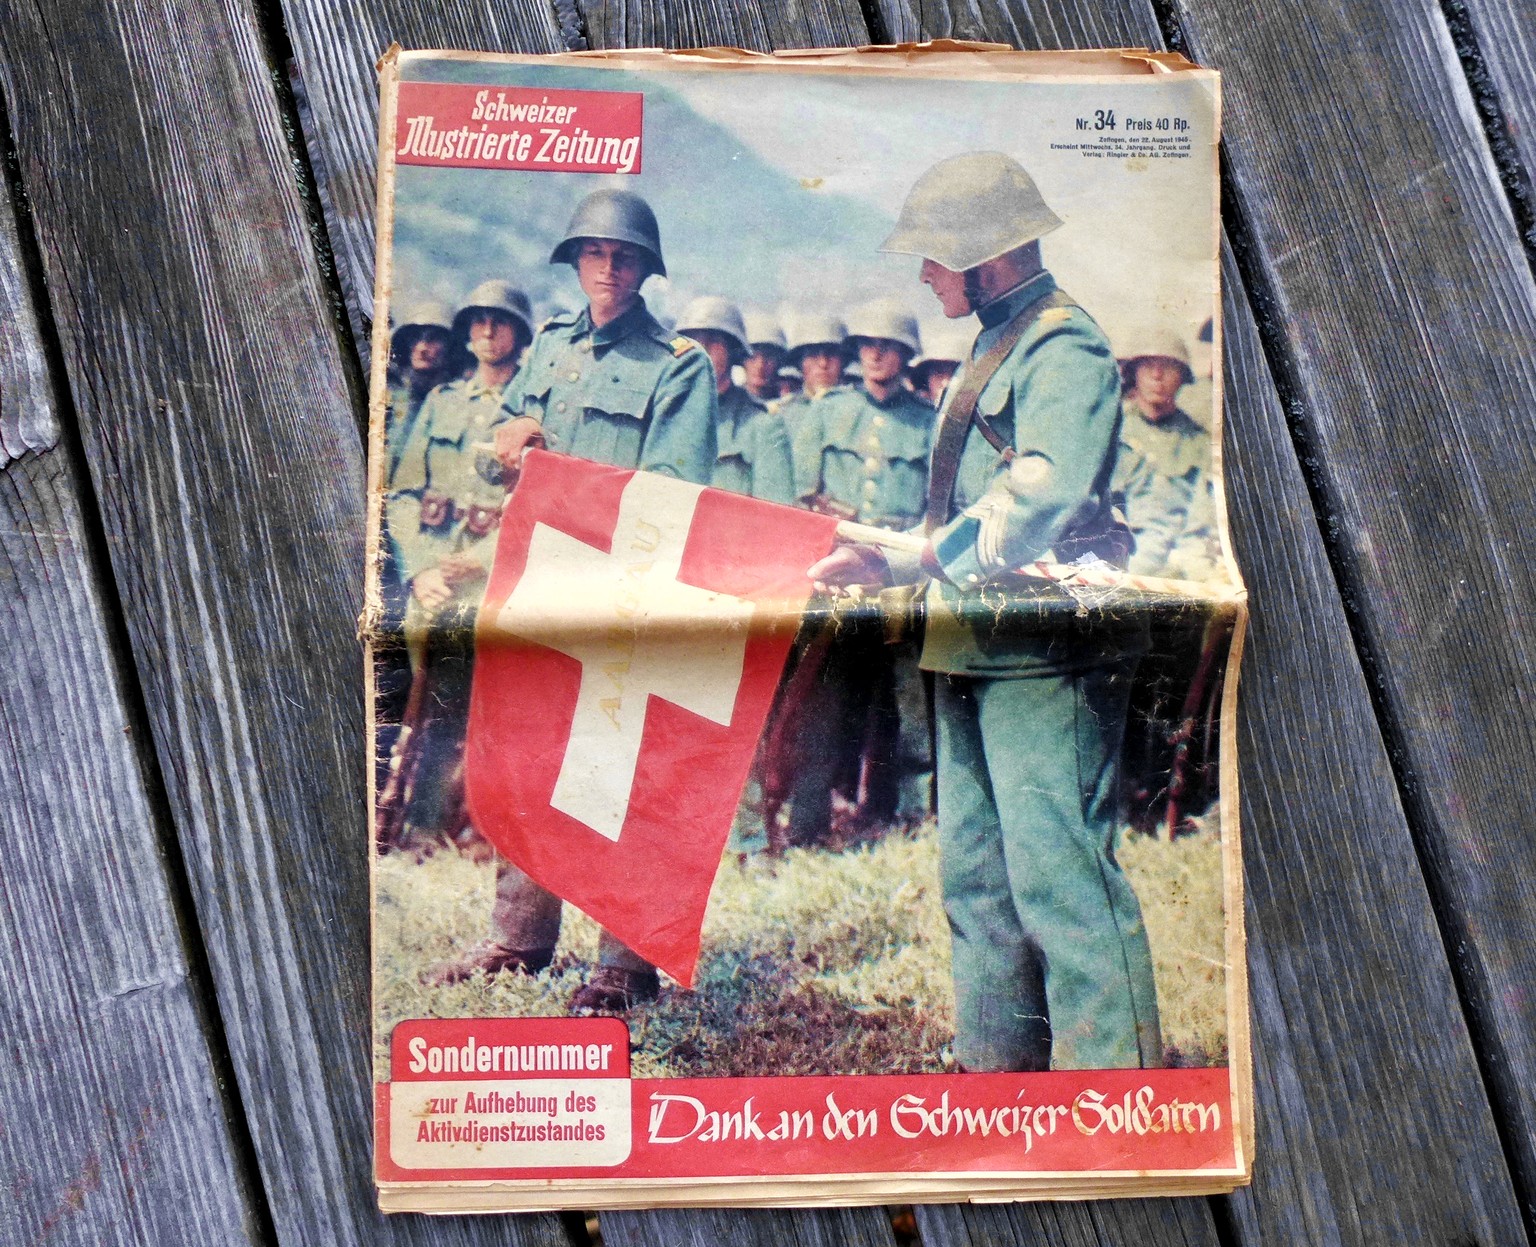 «Dank an den Schweizer Soldaten» – und an die Frauen?